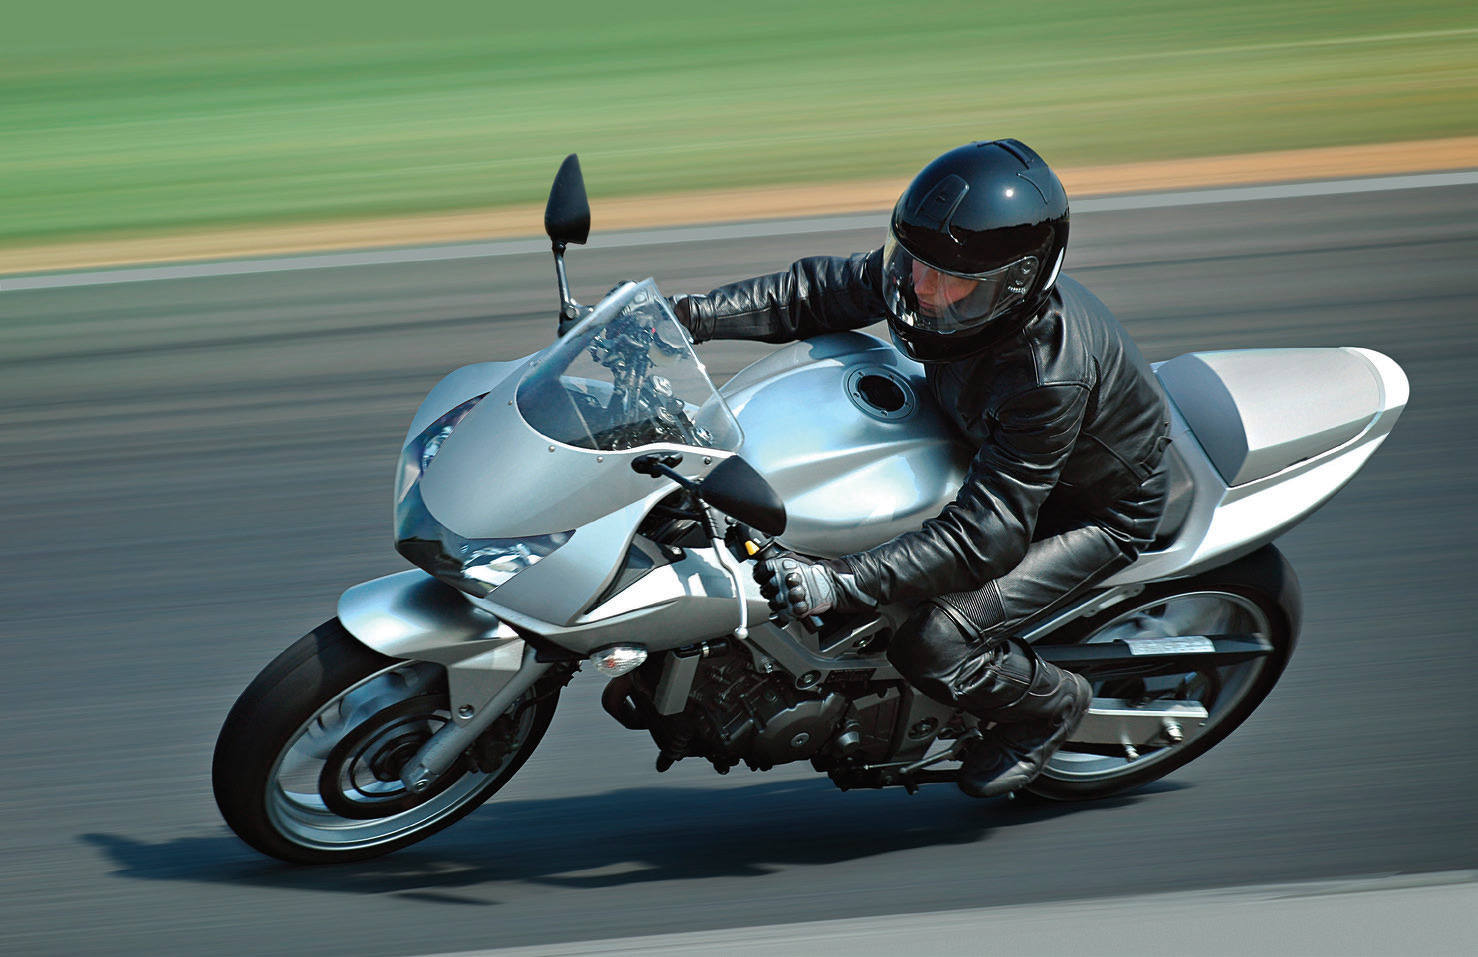  Мотоциклист на мотоцикле серебряного цвета на дороге.